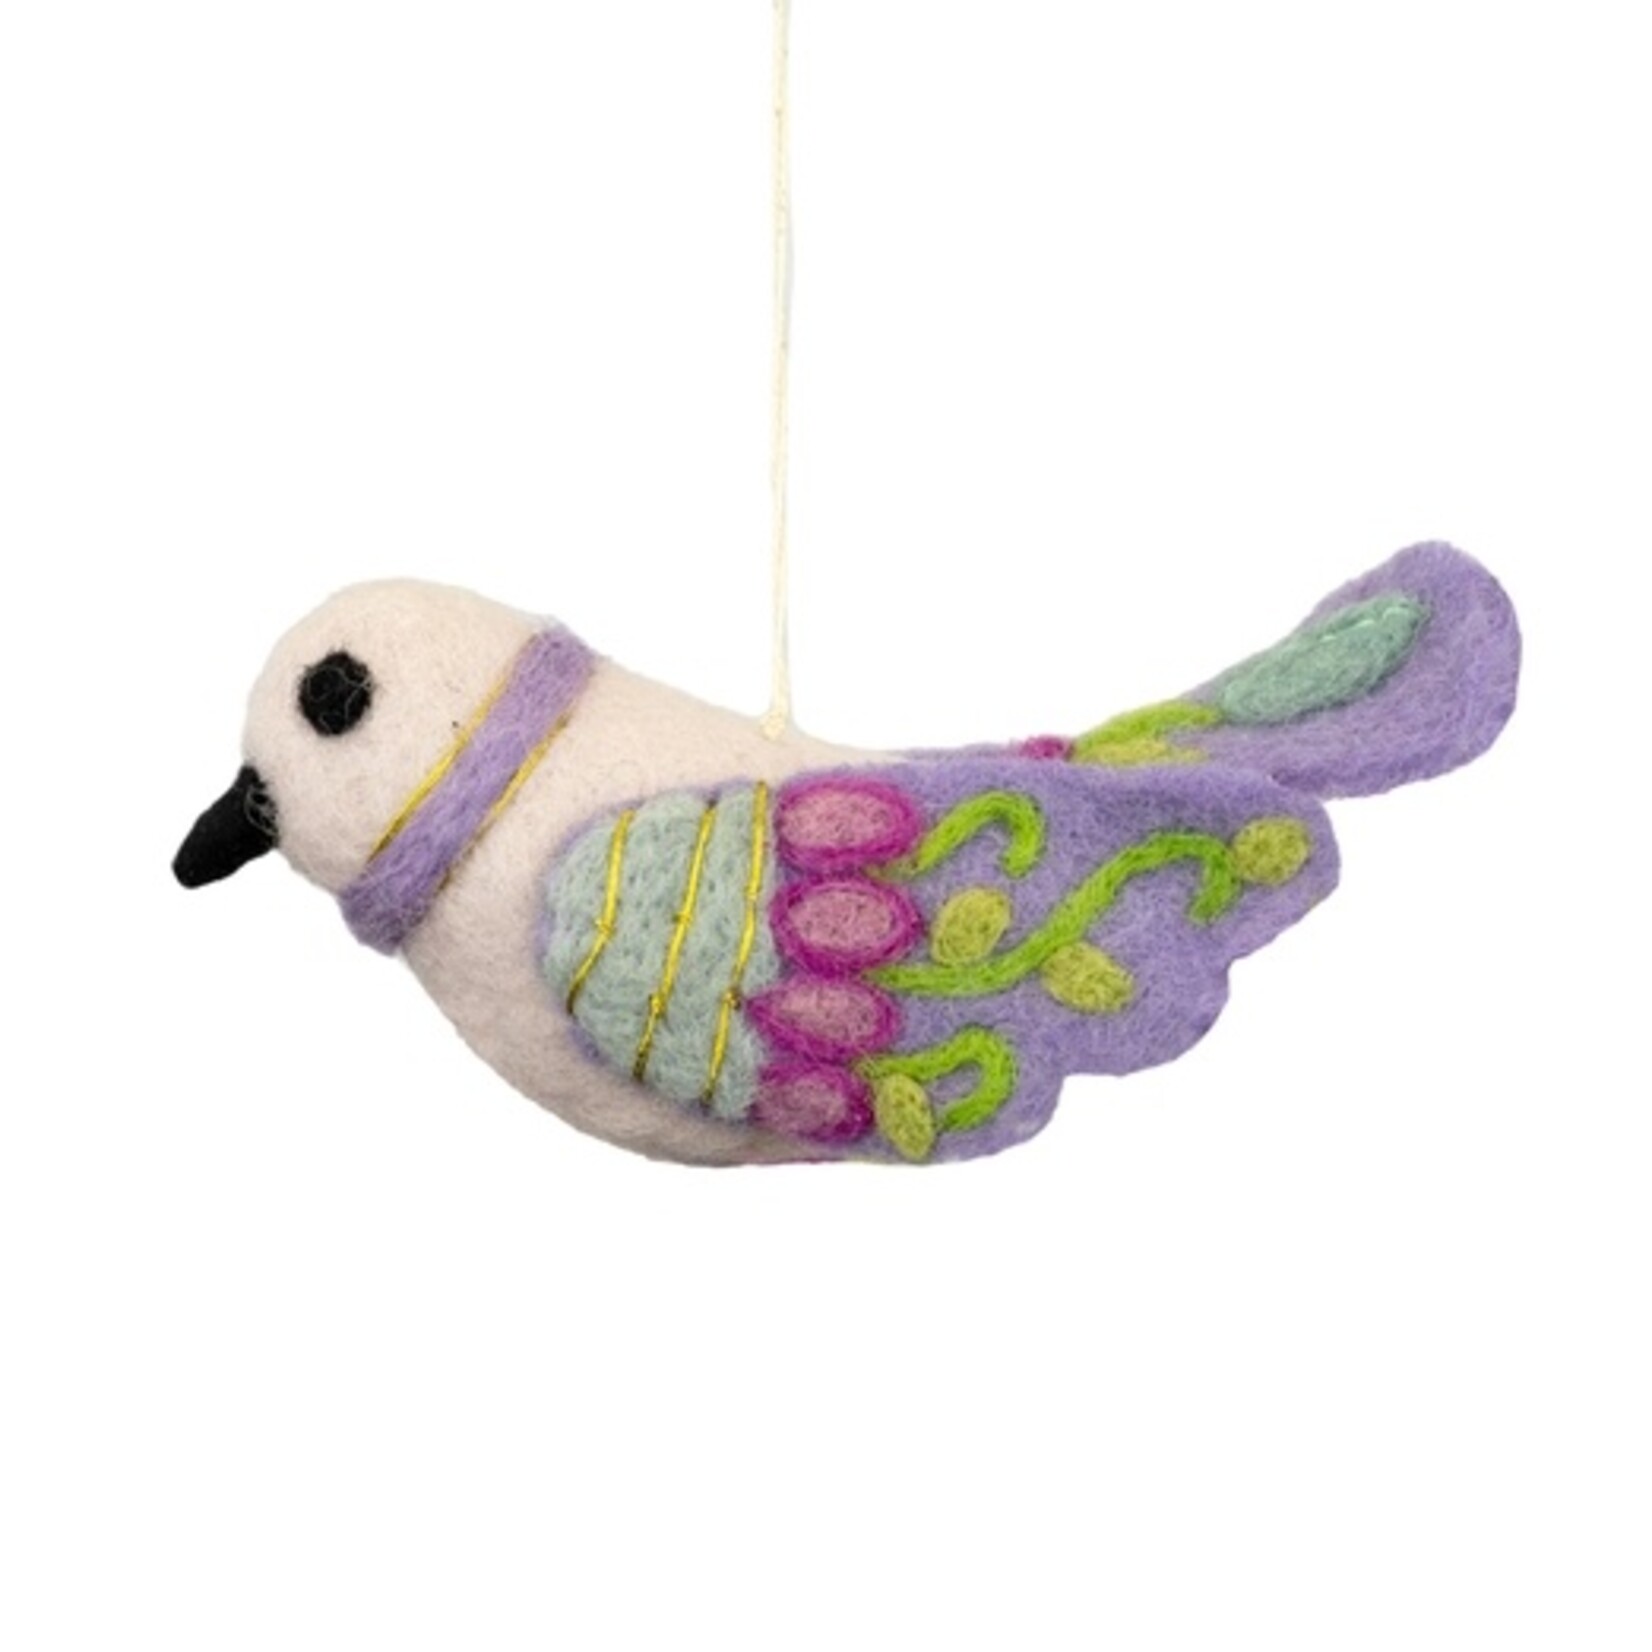 DZI dZi Handmade Bella Bird Ornament